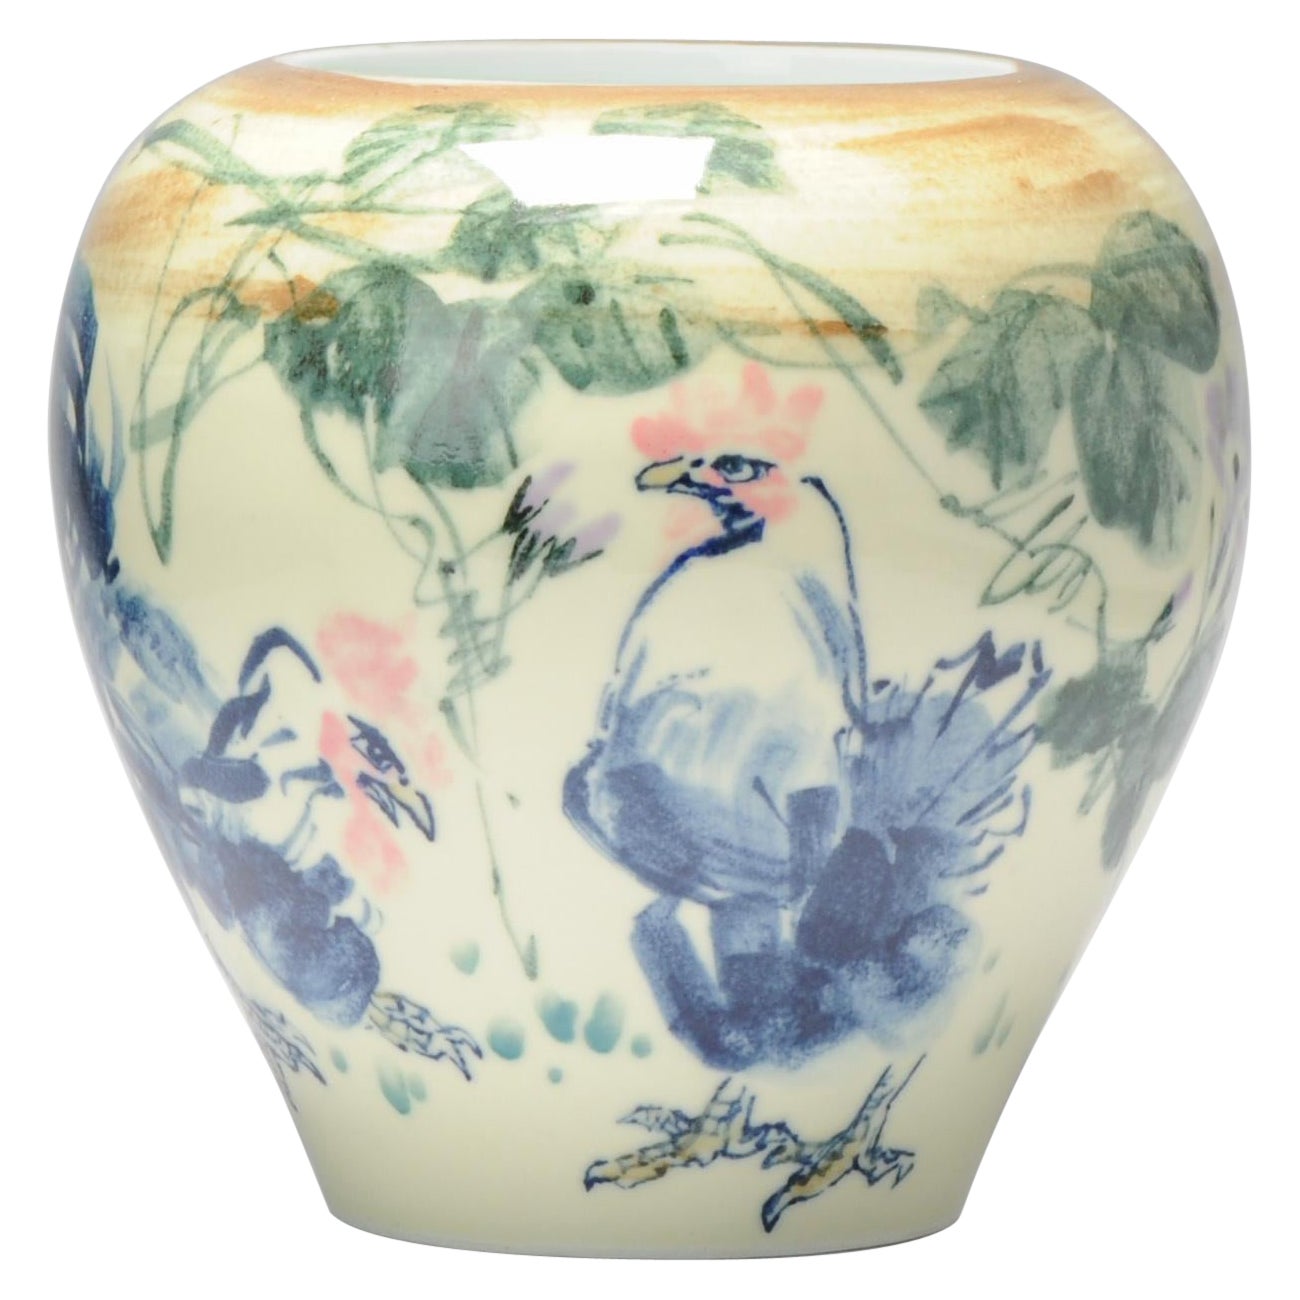 Vintage-Teekanne aus Porzellan Proc Liling Jardiniere China mit Hahnenunderglasur, 20. Jahrhundert